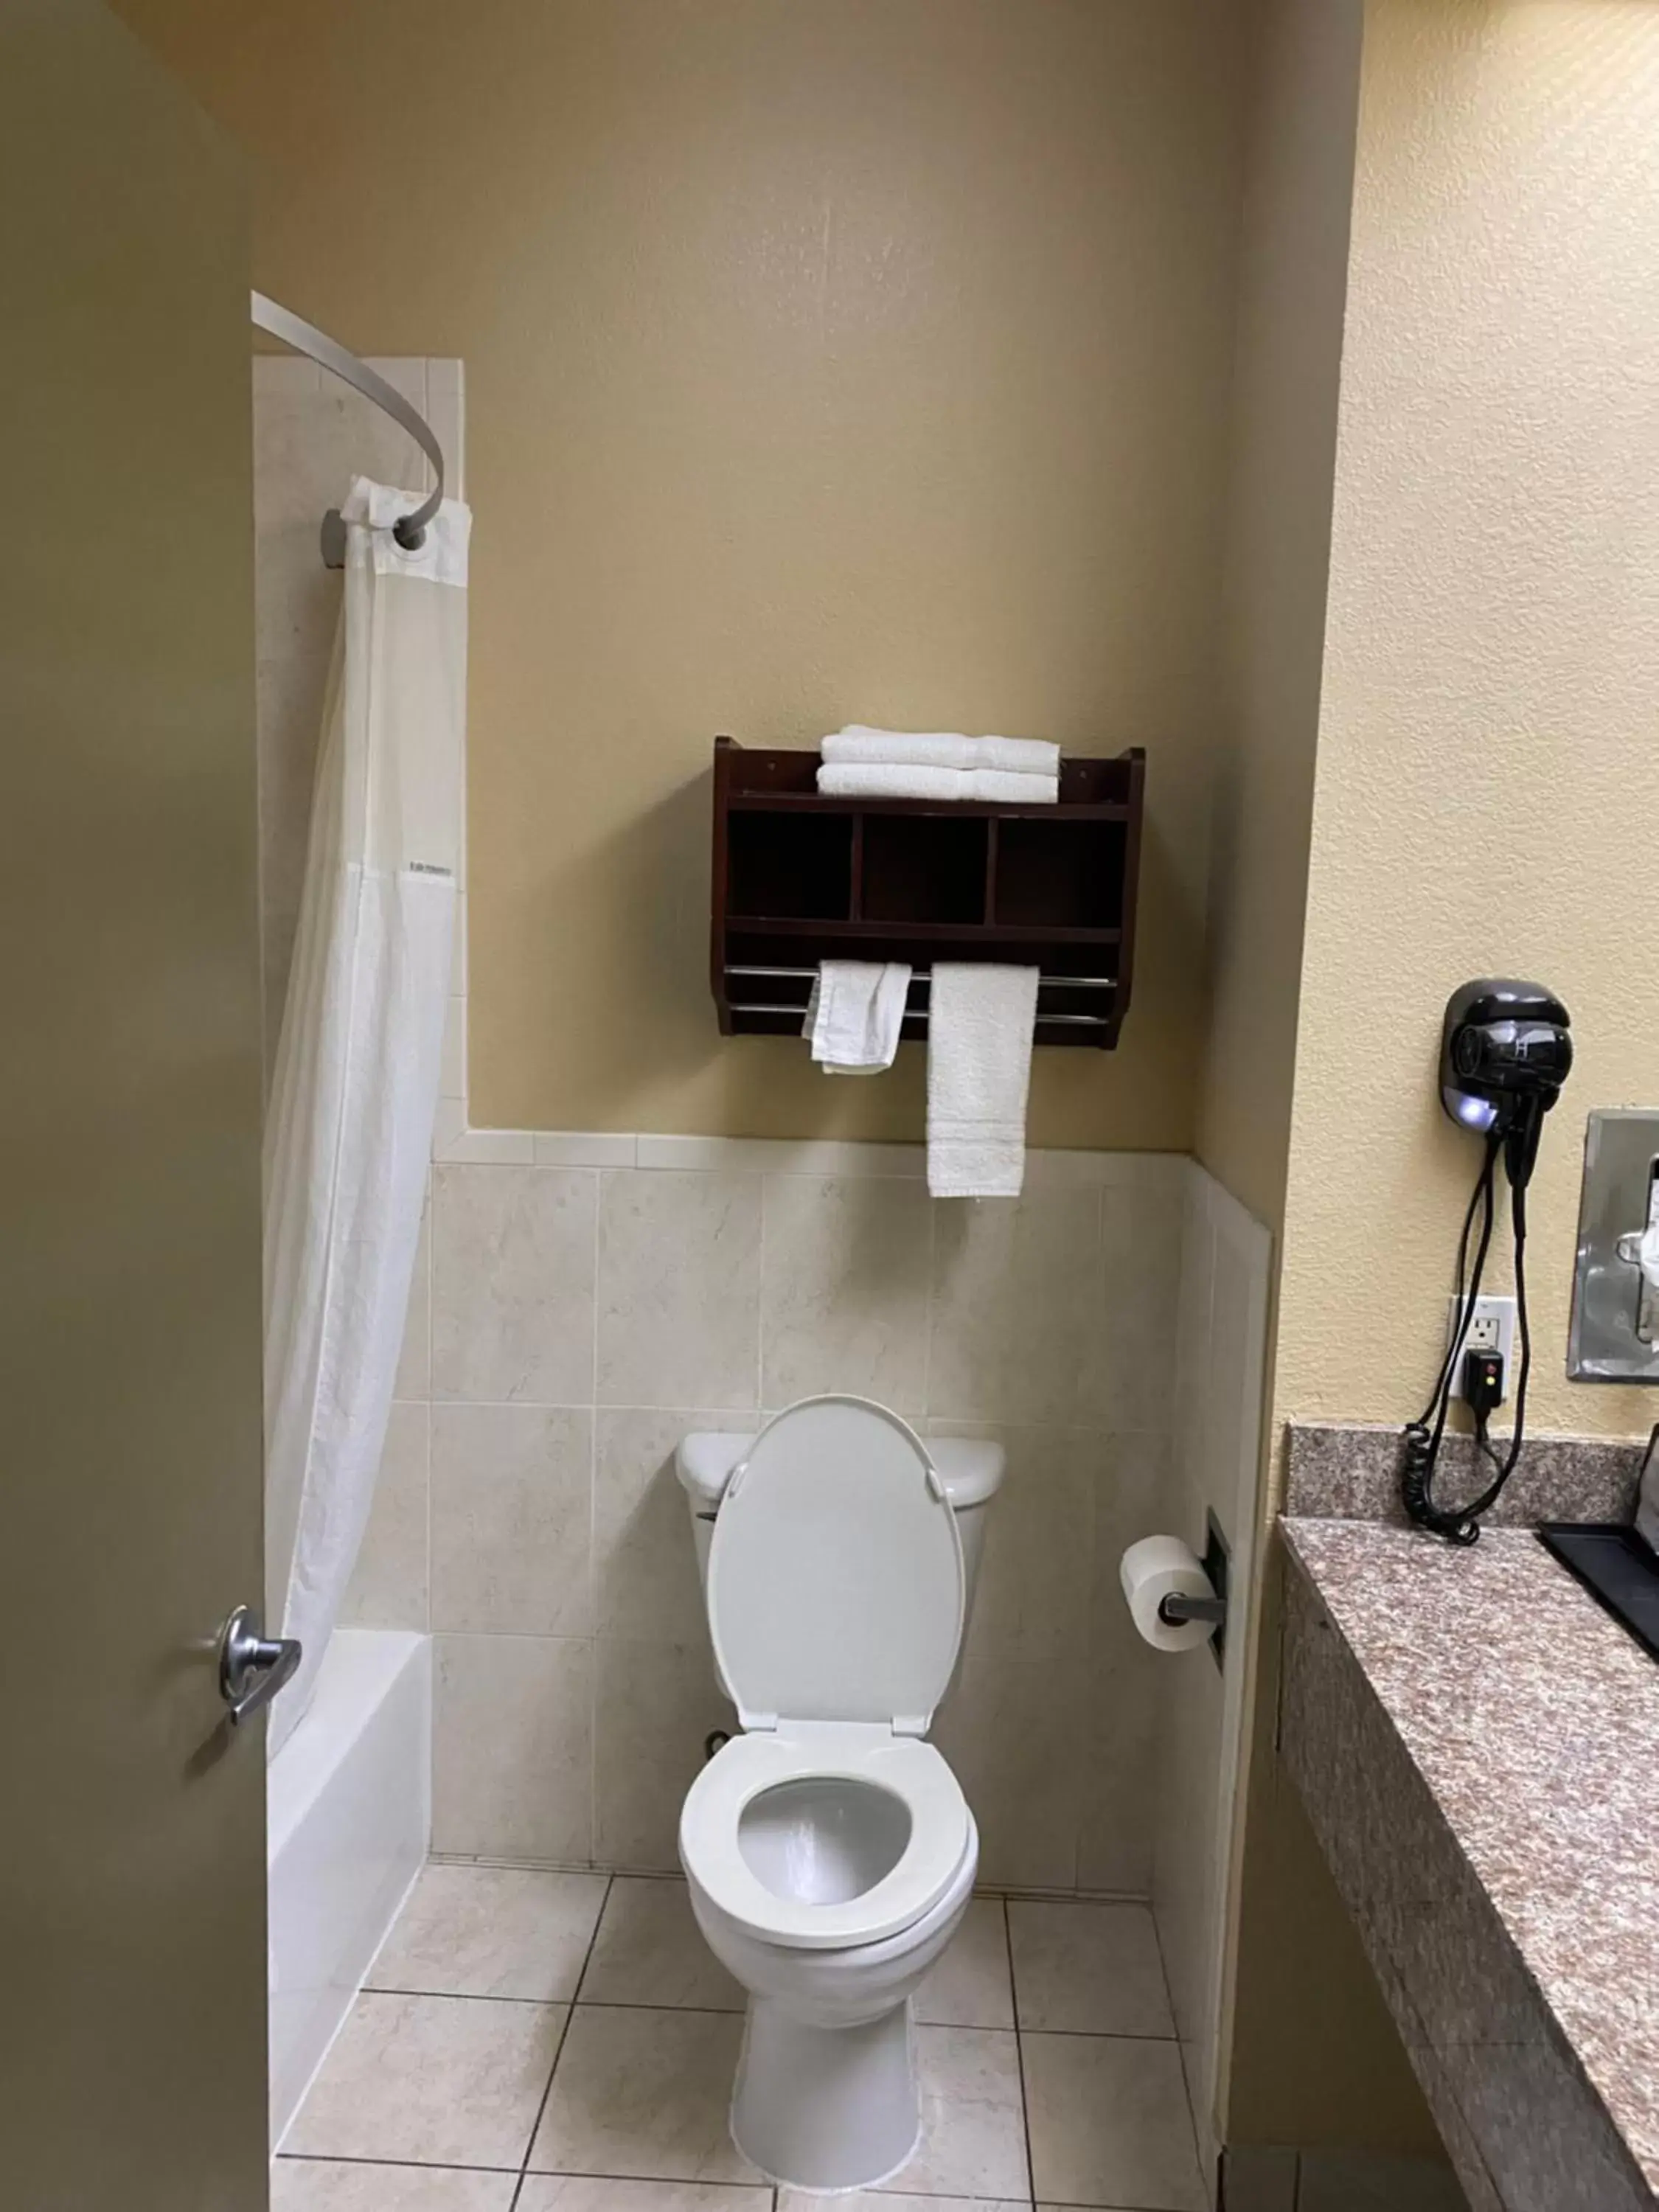 Bathroom in Super 8 by Wyndham Intercontinental Houston TX